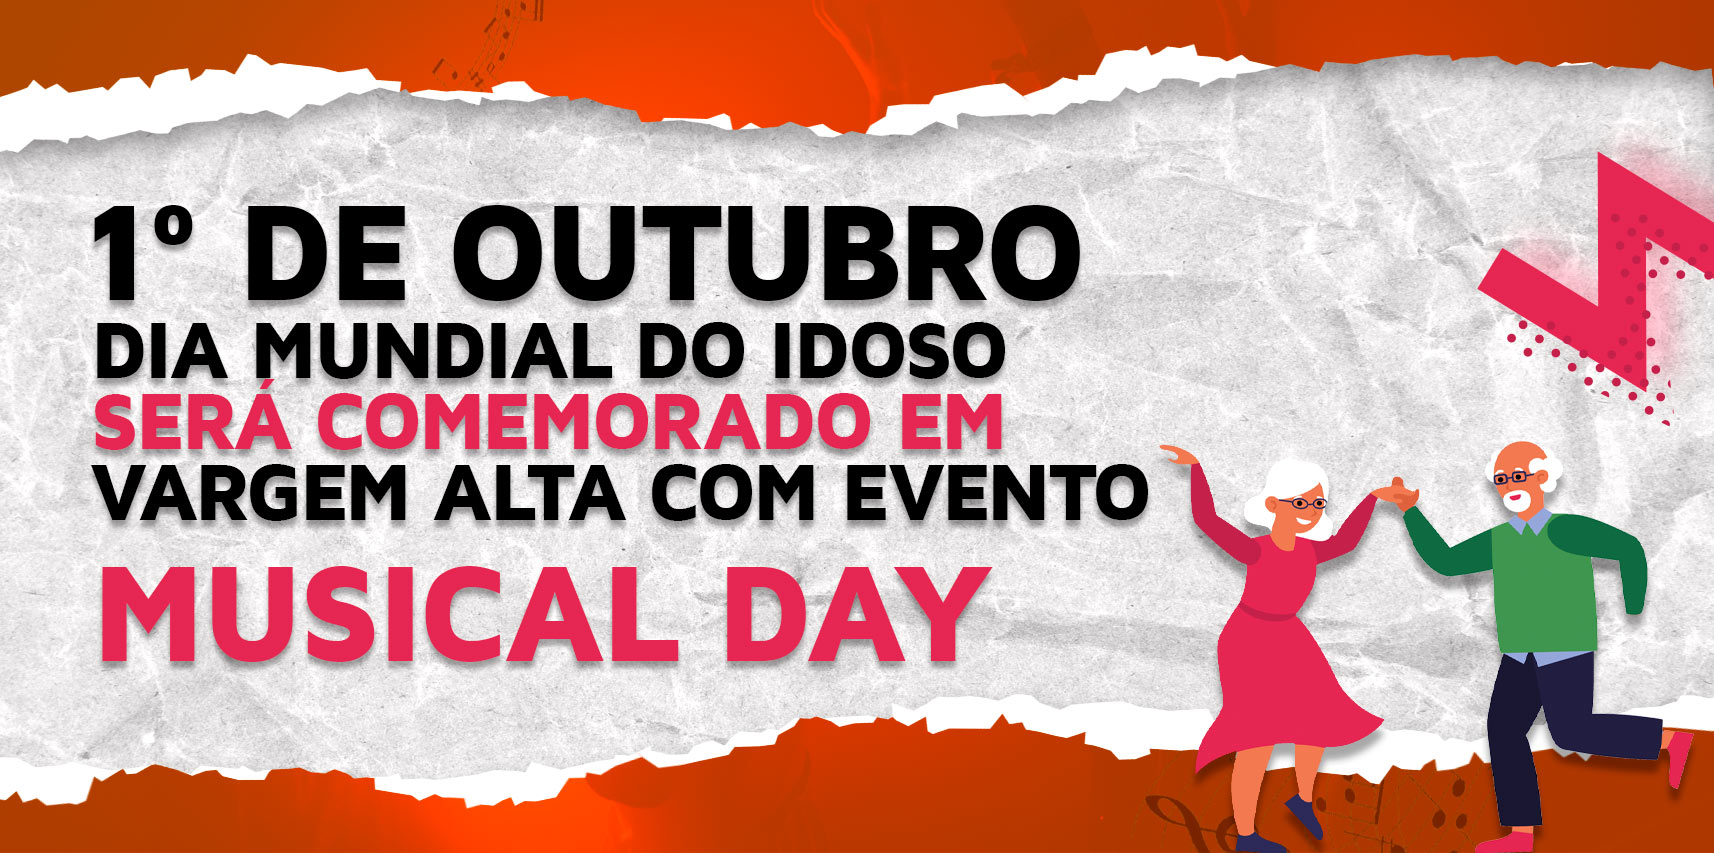 Dia Mundial do Idoso será comemorado em Vargem Alta com evento Musical Day